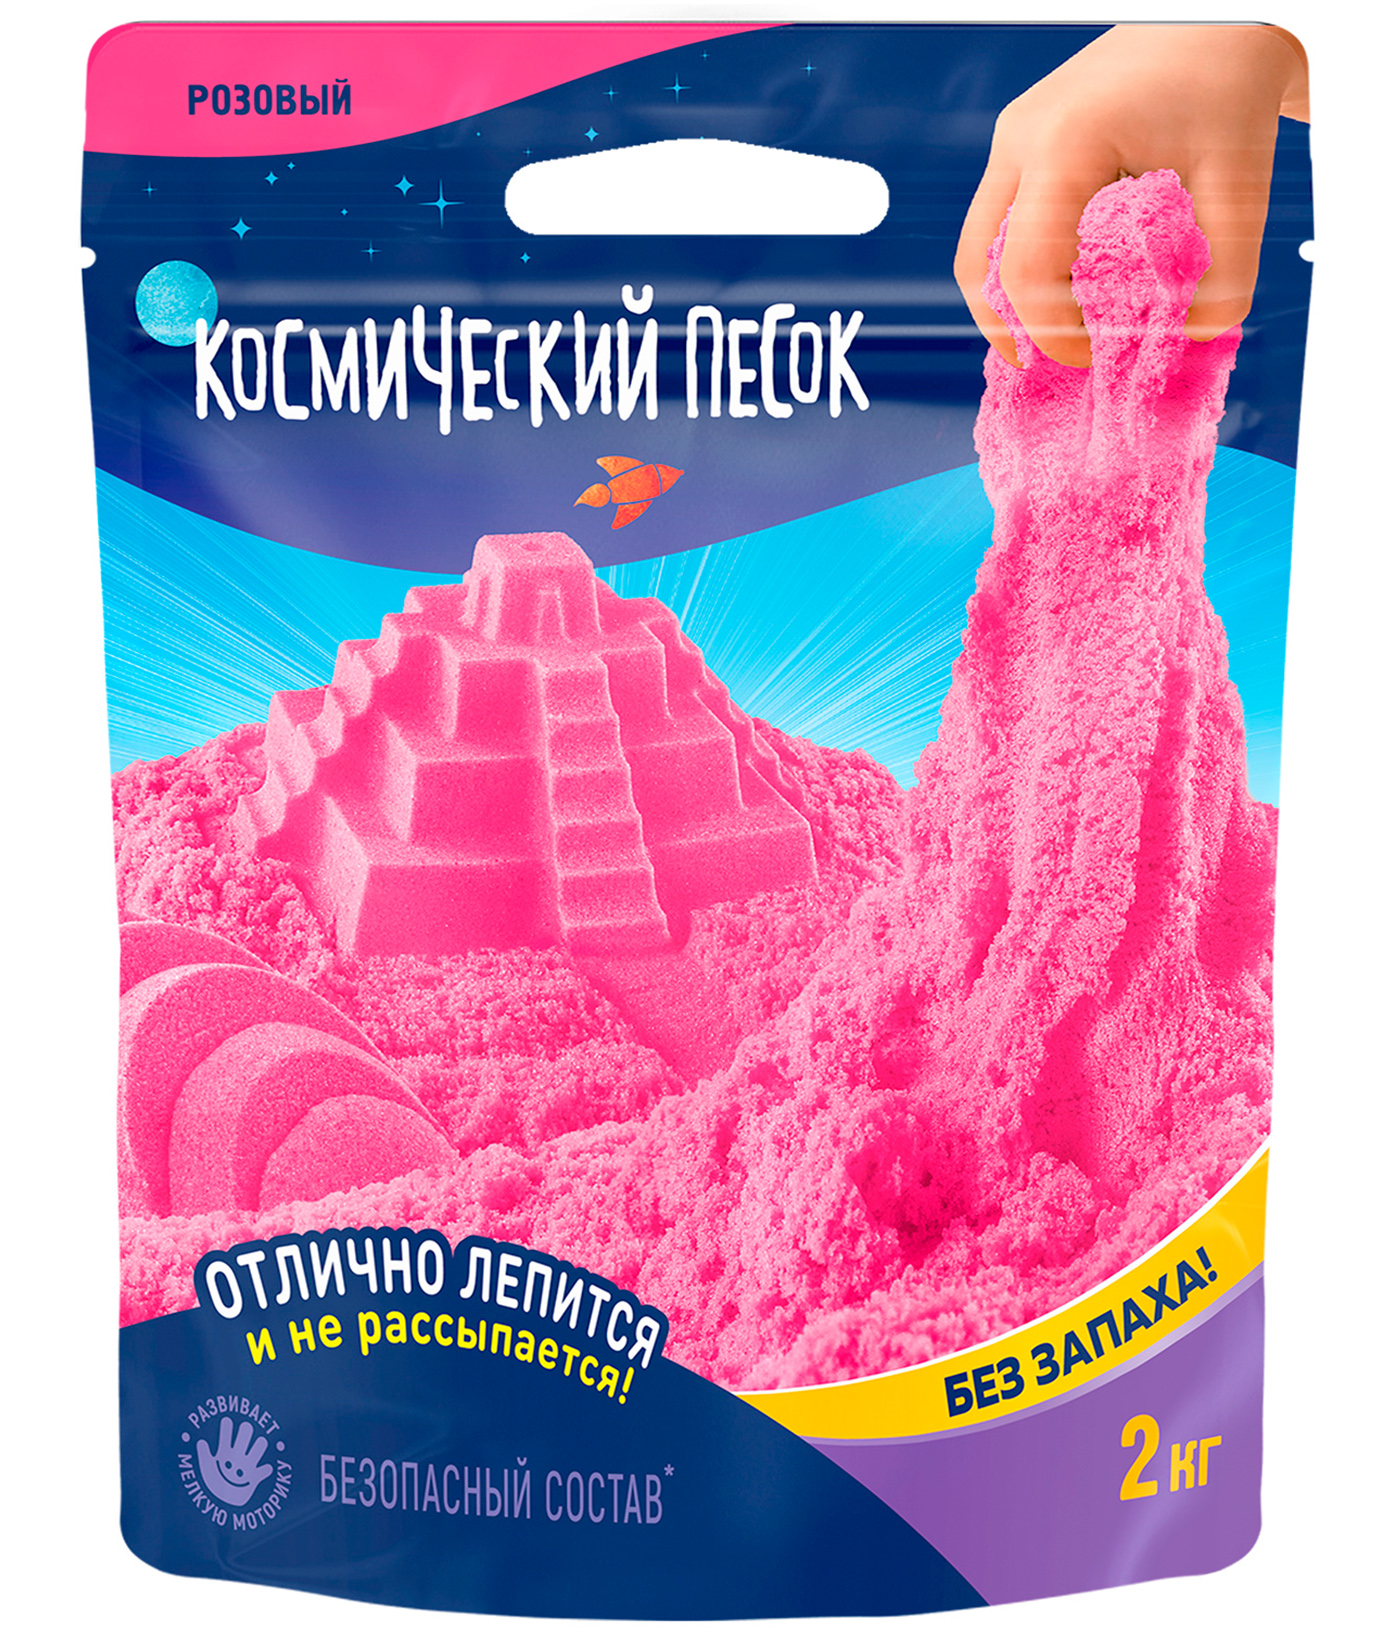 Игрушка для детей Космический песок 2 кг, дой-пак, розовый